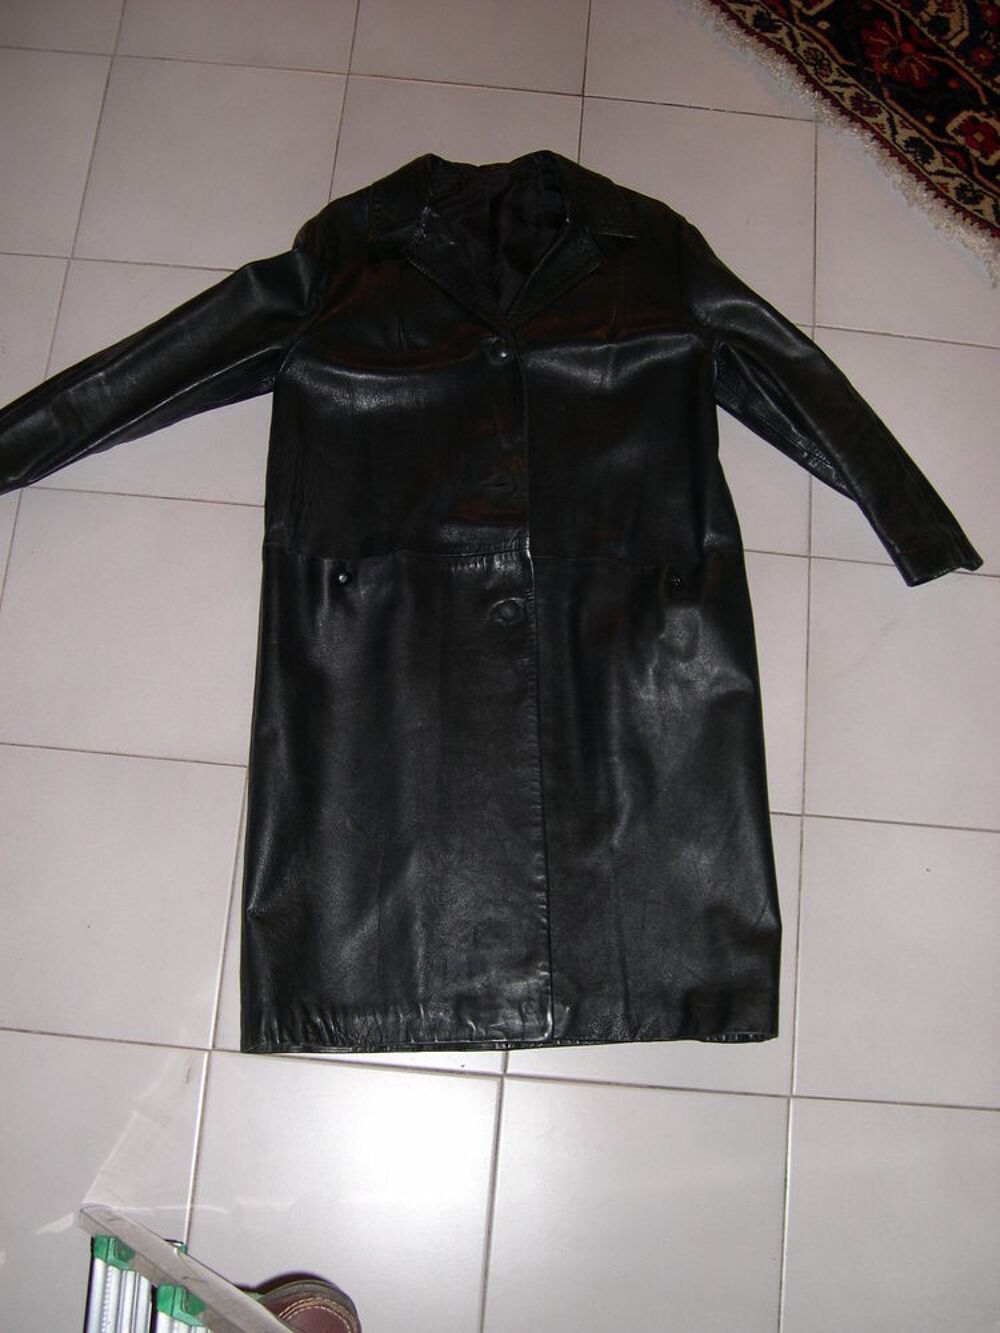 Manteau 3/4, noir, type Presley, neuf Vtements